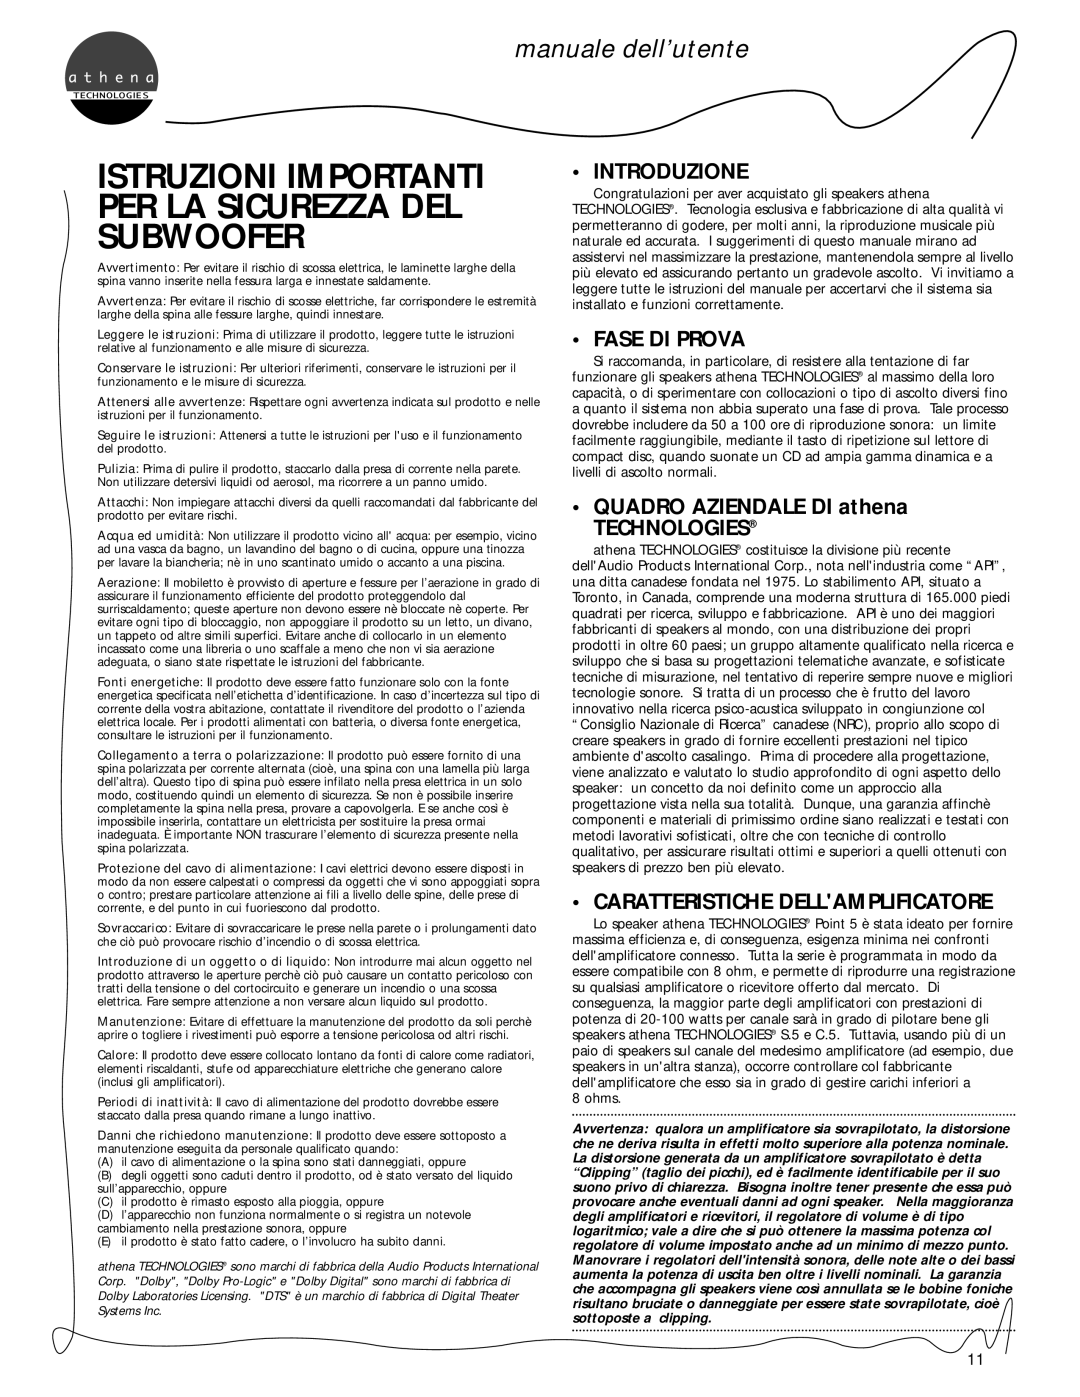 Athena Technologies C.5, S.5 manuale dell’utente, Introduzione, Fase Di Prova, QUADRO AZIENDALE DI athena TECHNOLOGIES 